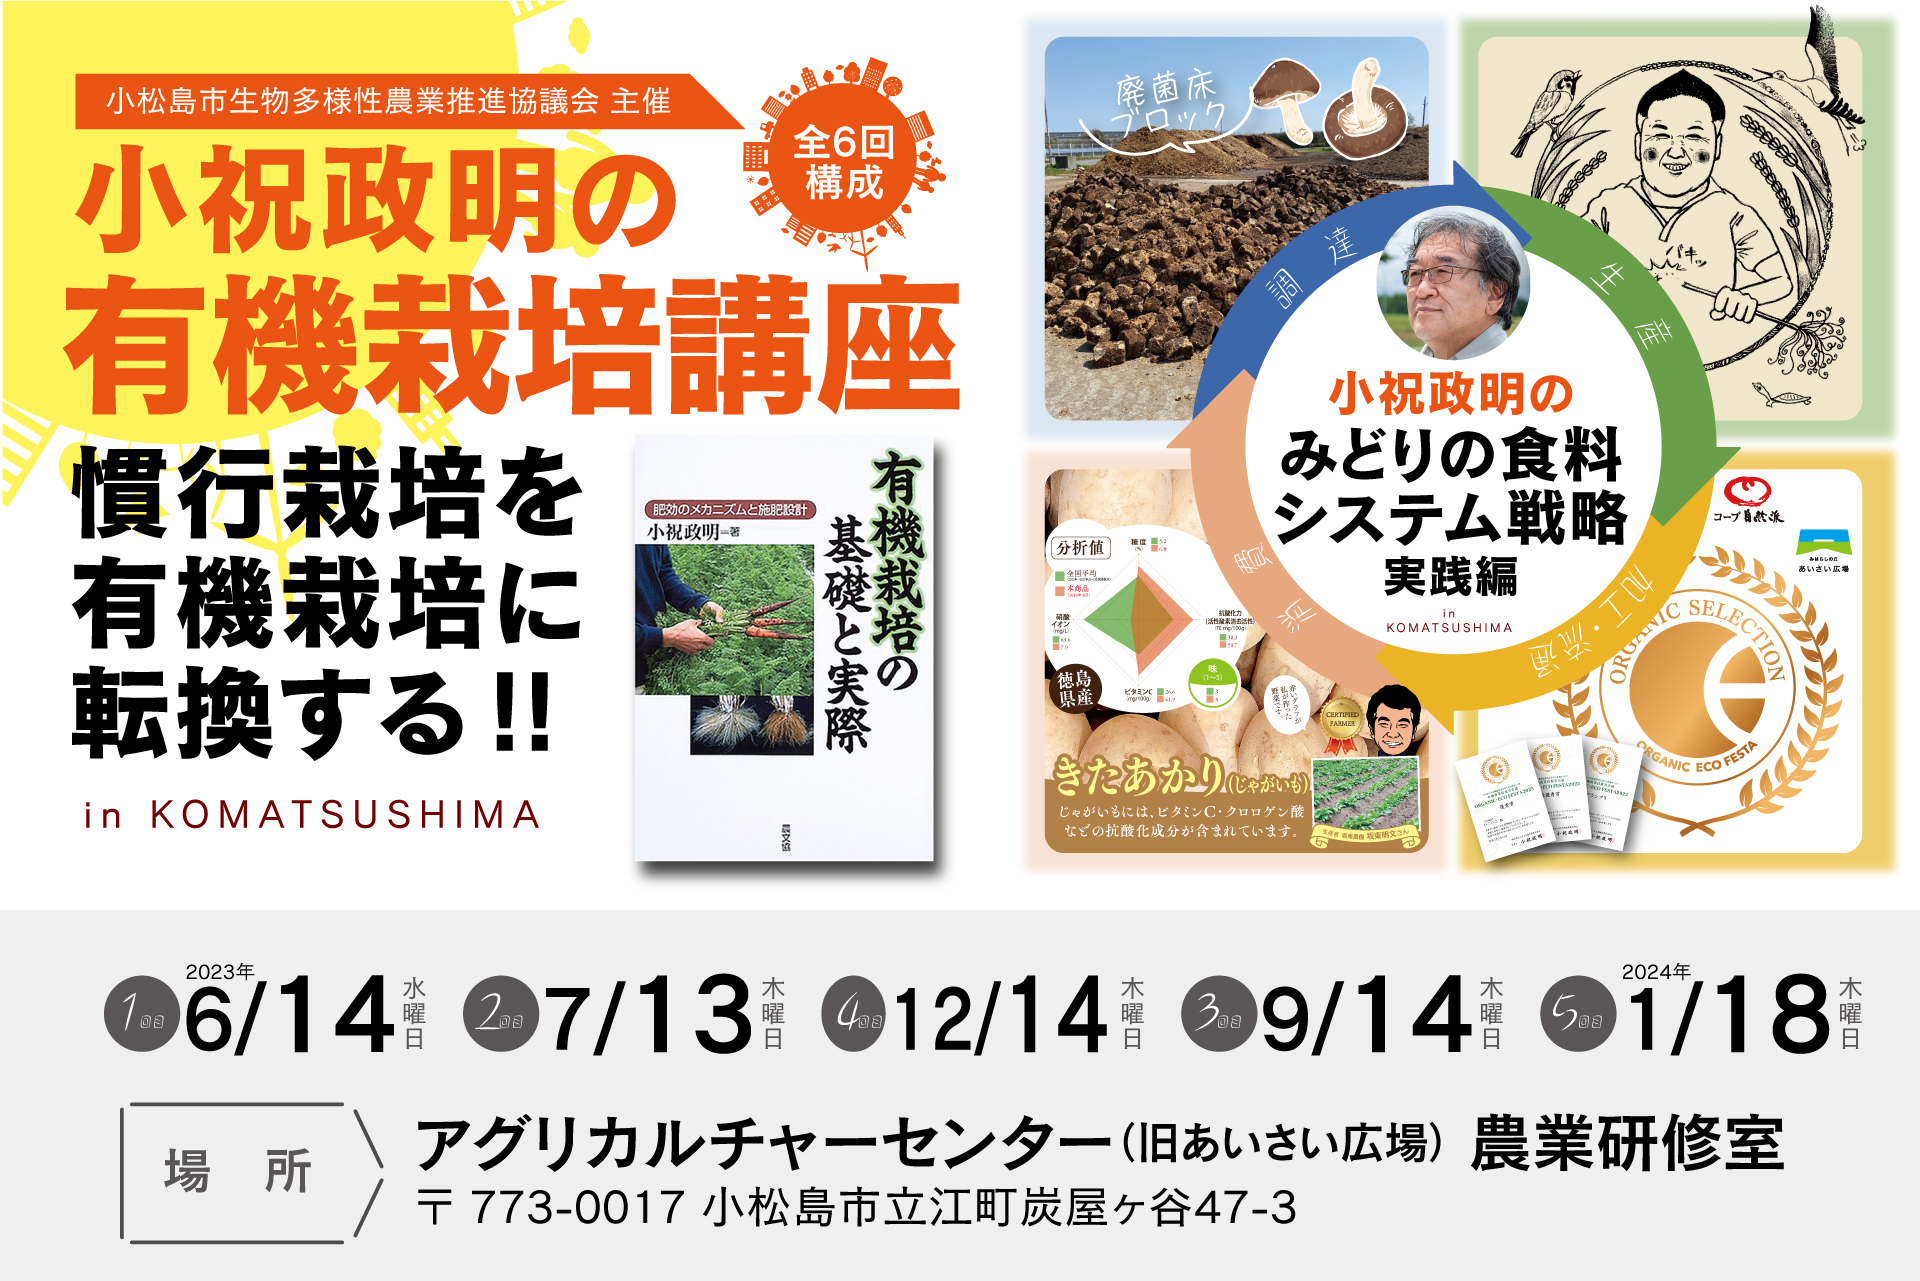 【講義】小祝政明の有機栽培講座 in KOMATSUSHIMAのご案内【実践】